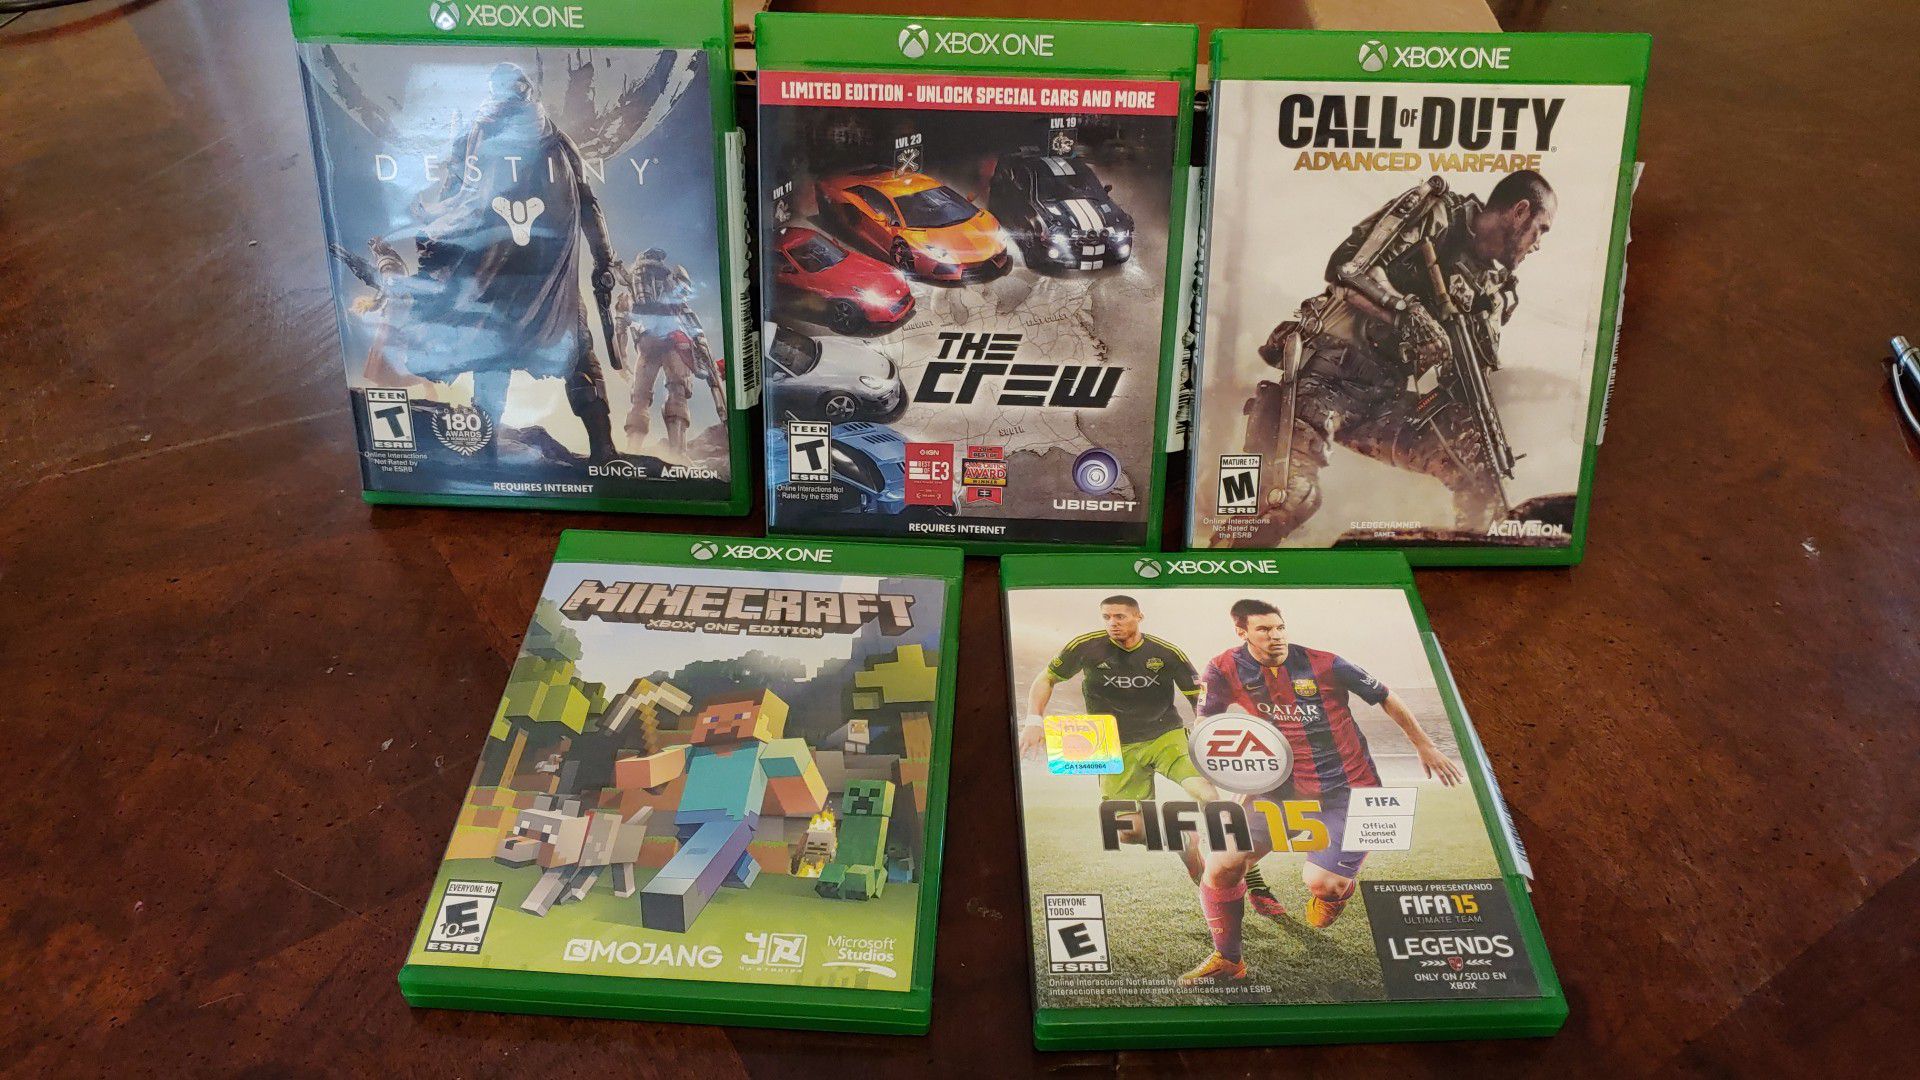 Xbox ONE games. Destiny, the crew, call of duty advance warfare, Minecraft, FIFA 15